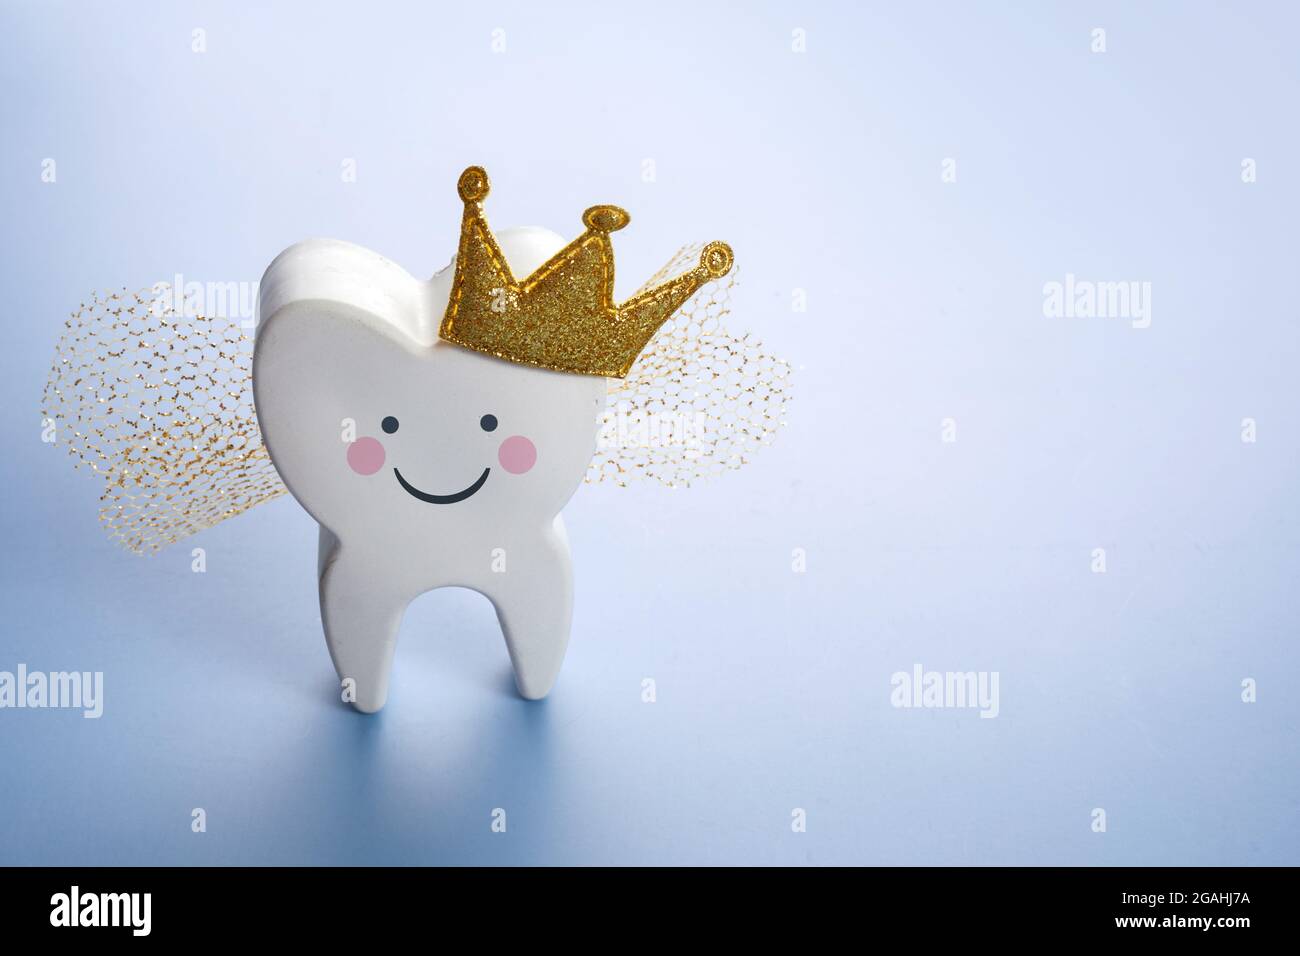 Festa nazionale del dente. Fata dei denti dei bambini. Carino dente con le ali, una corona. Foto Stock